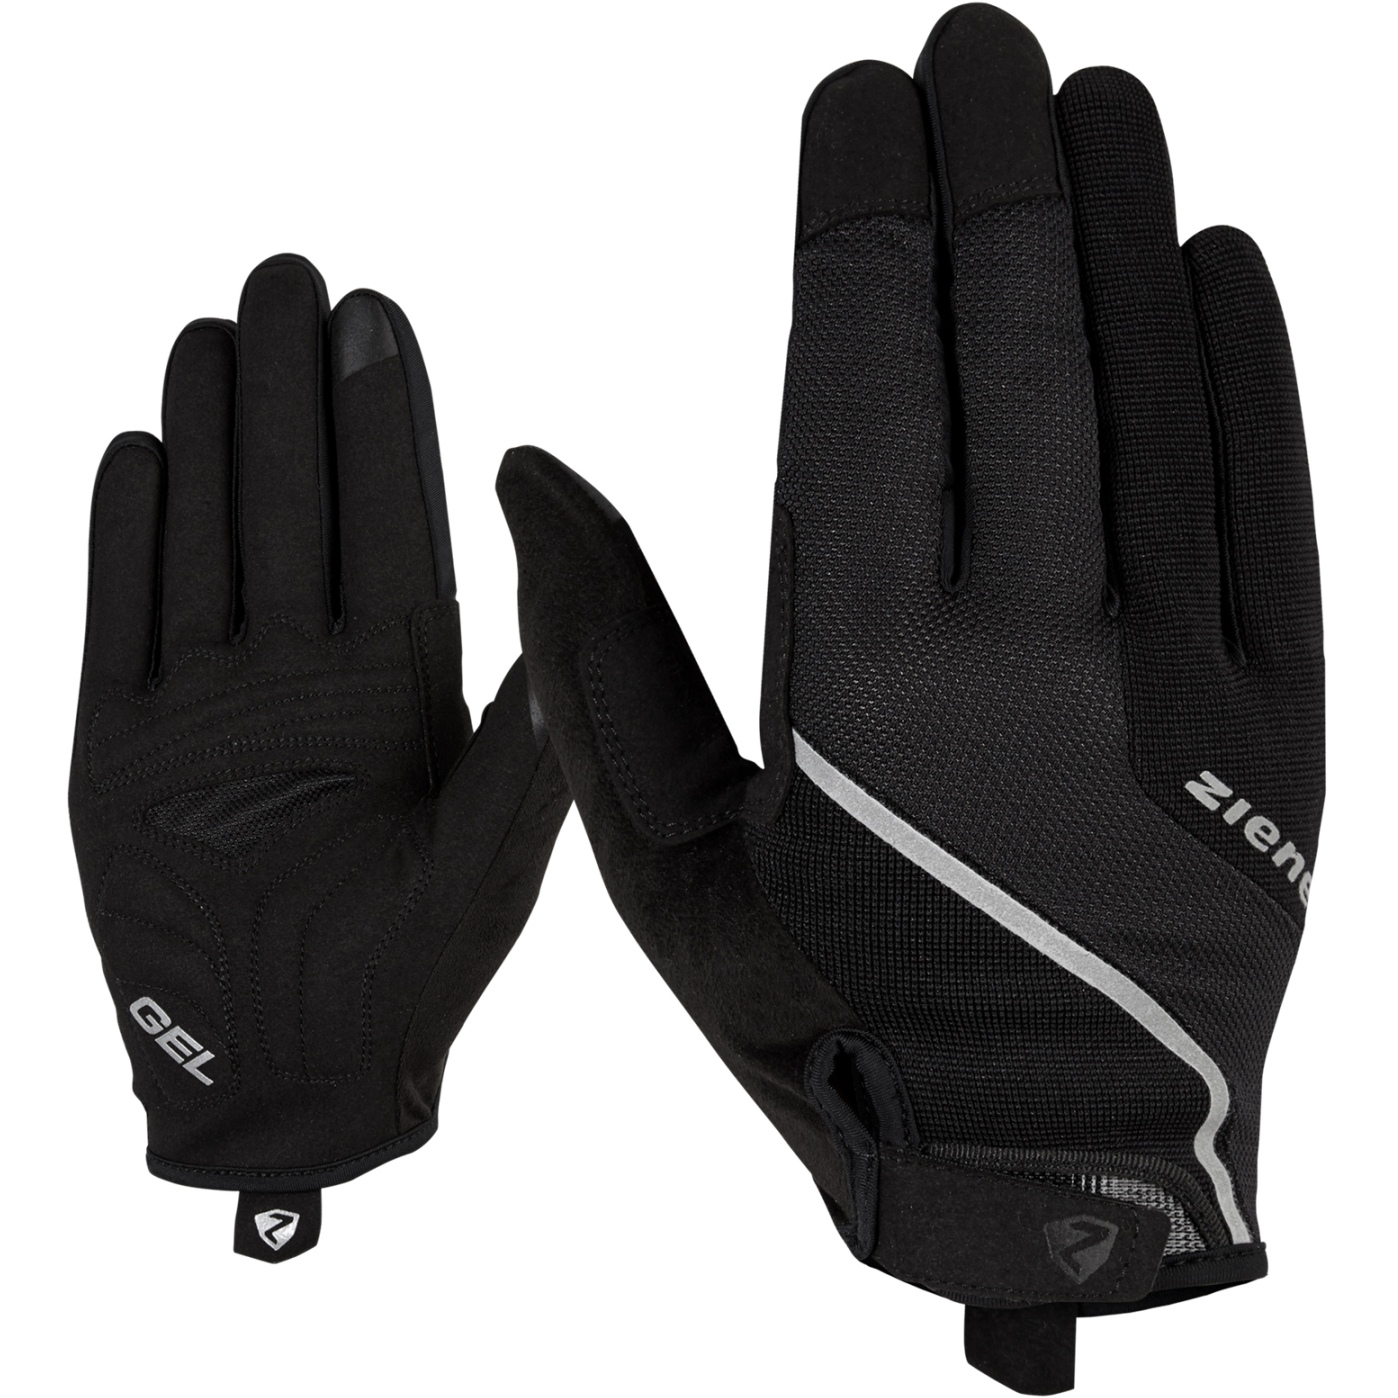 Productfoto van Ziener Clyo Touch Long Bike Gloves - black